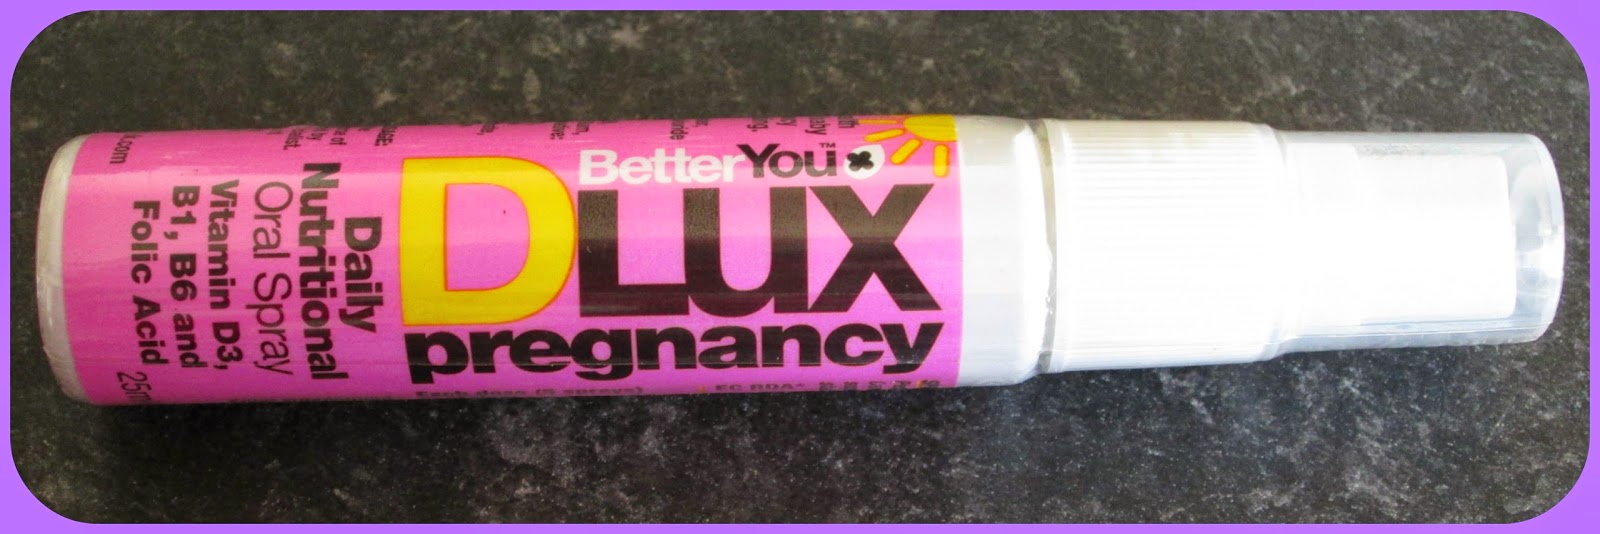 folic acid pregnancy spray alternative vitamins in pregnancy